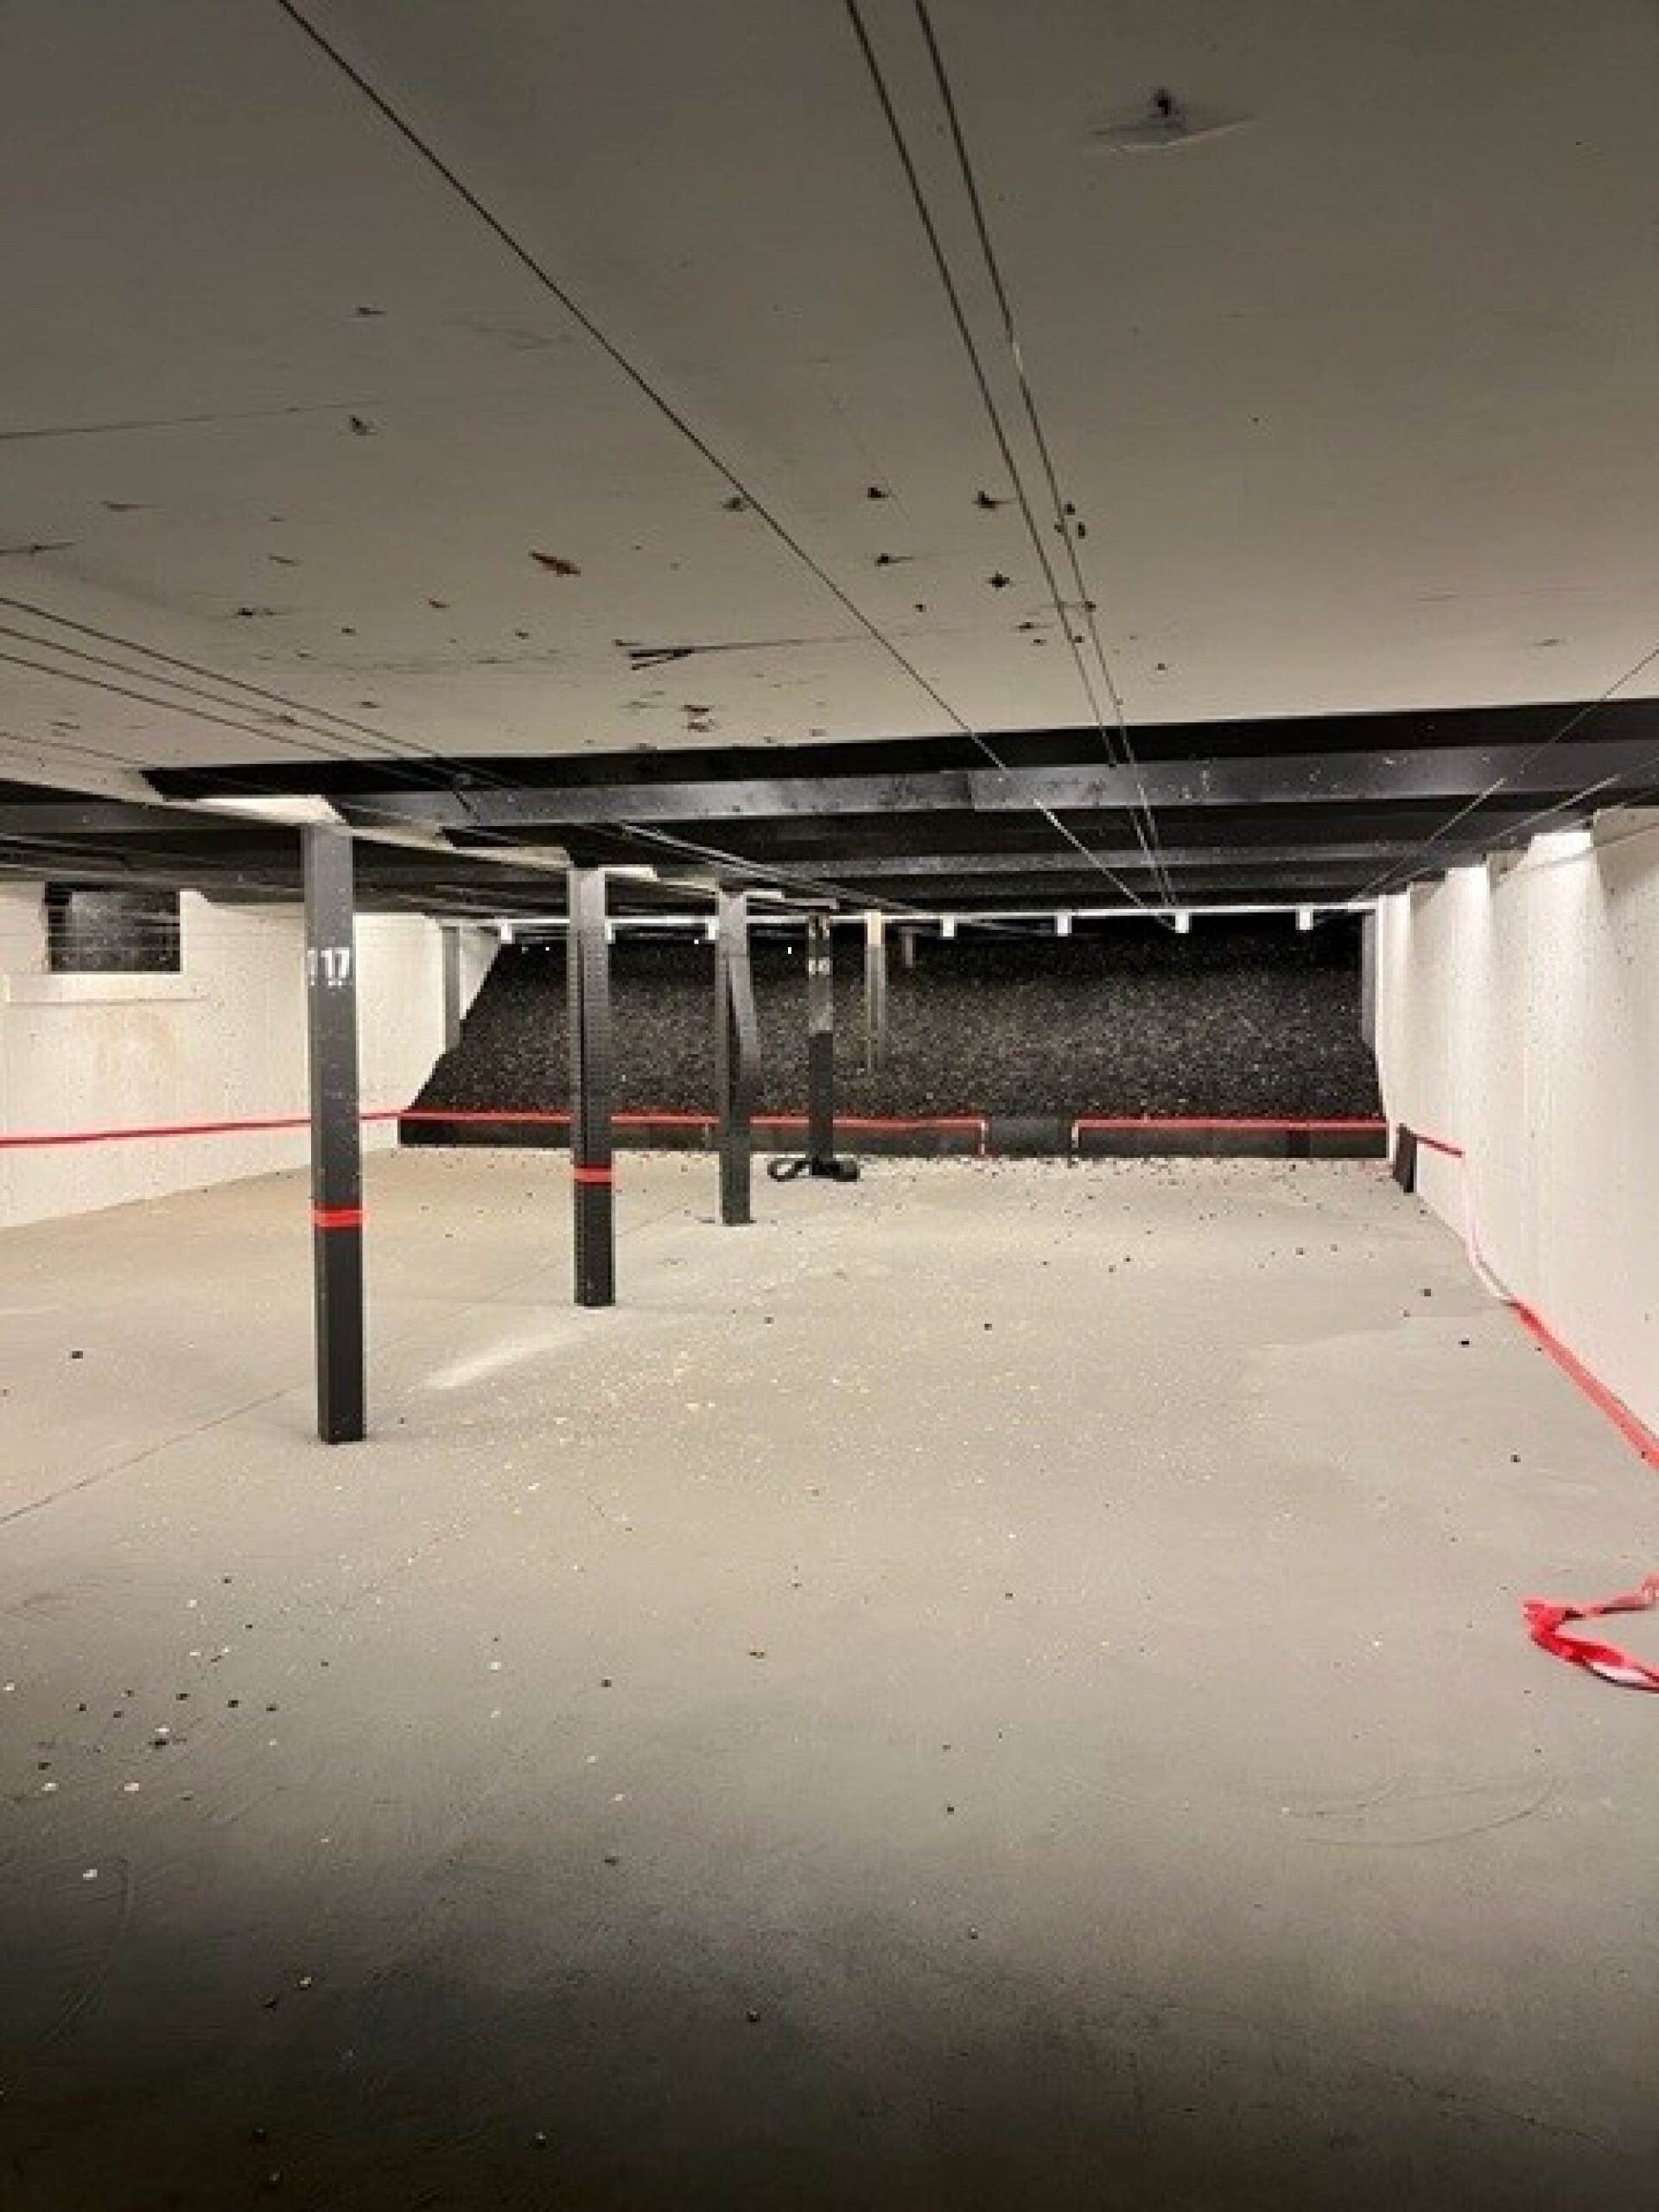 The indoor pistol range.